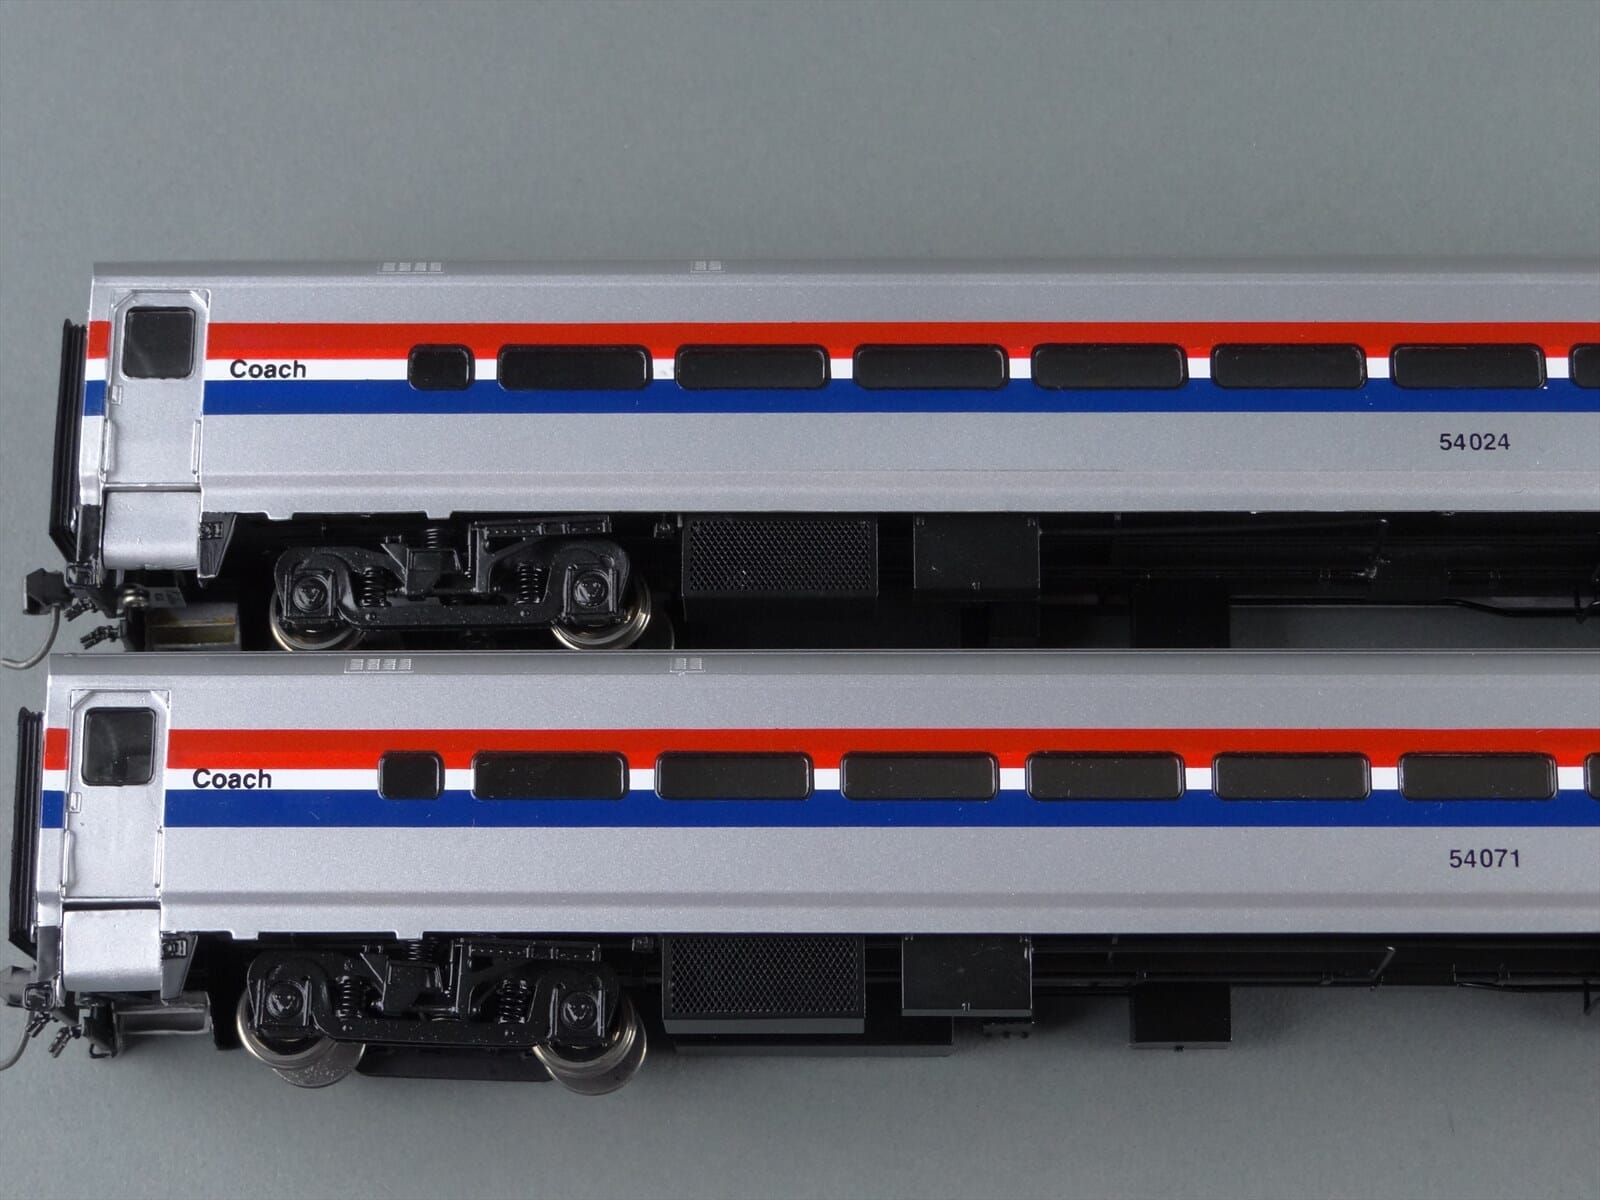 amtrak model trains ho scale